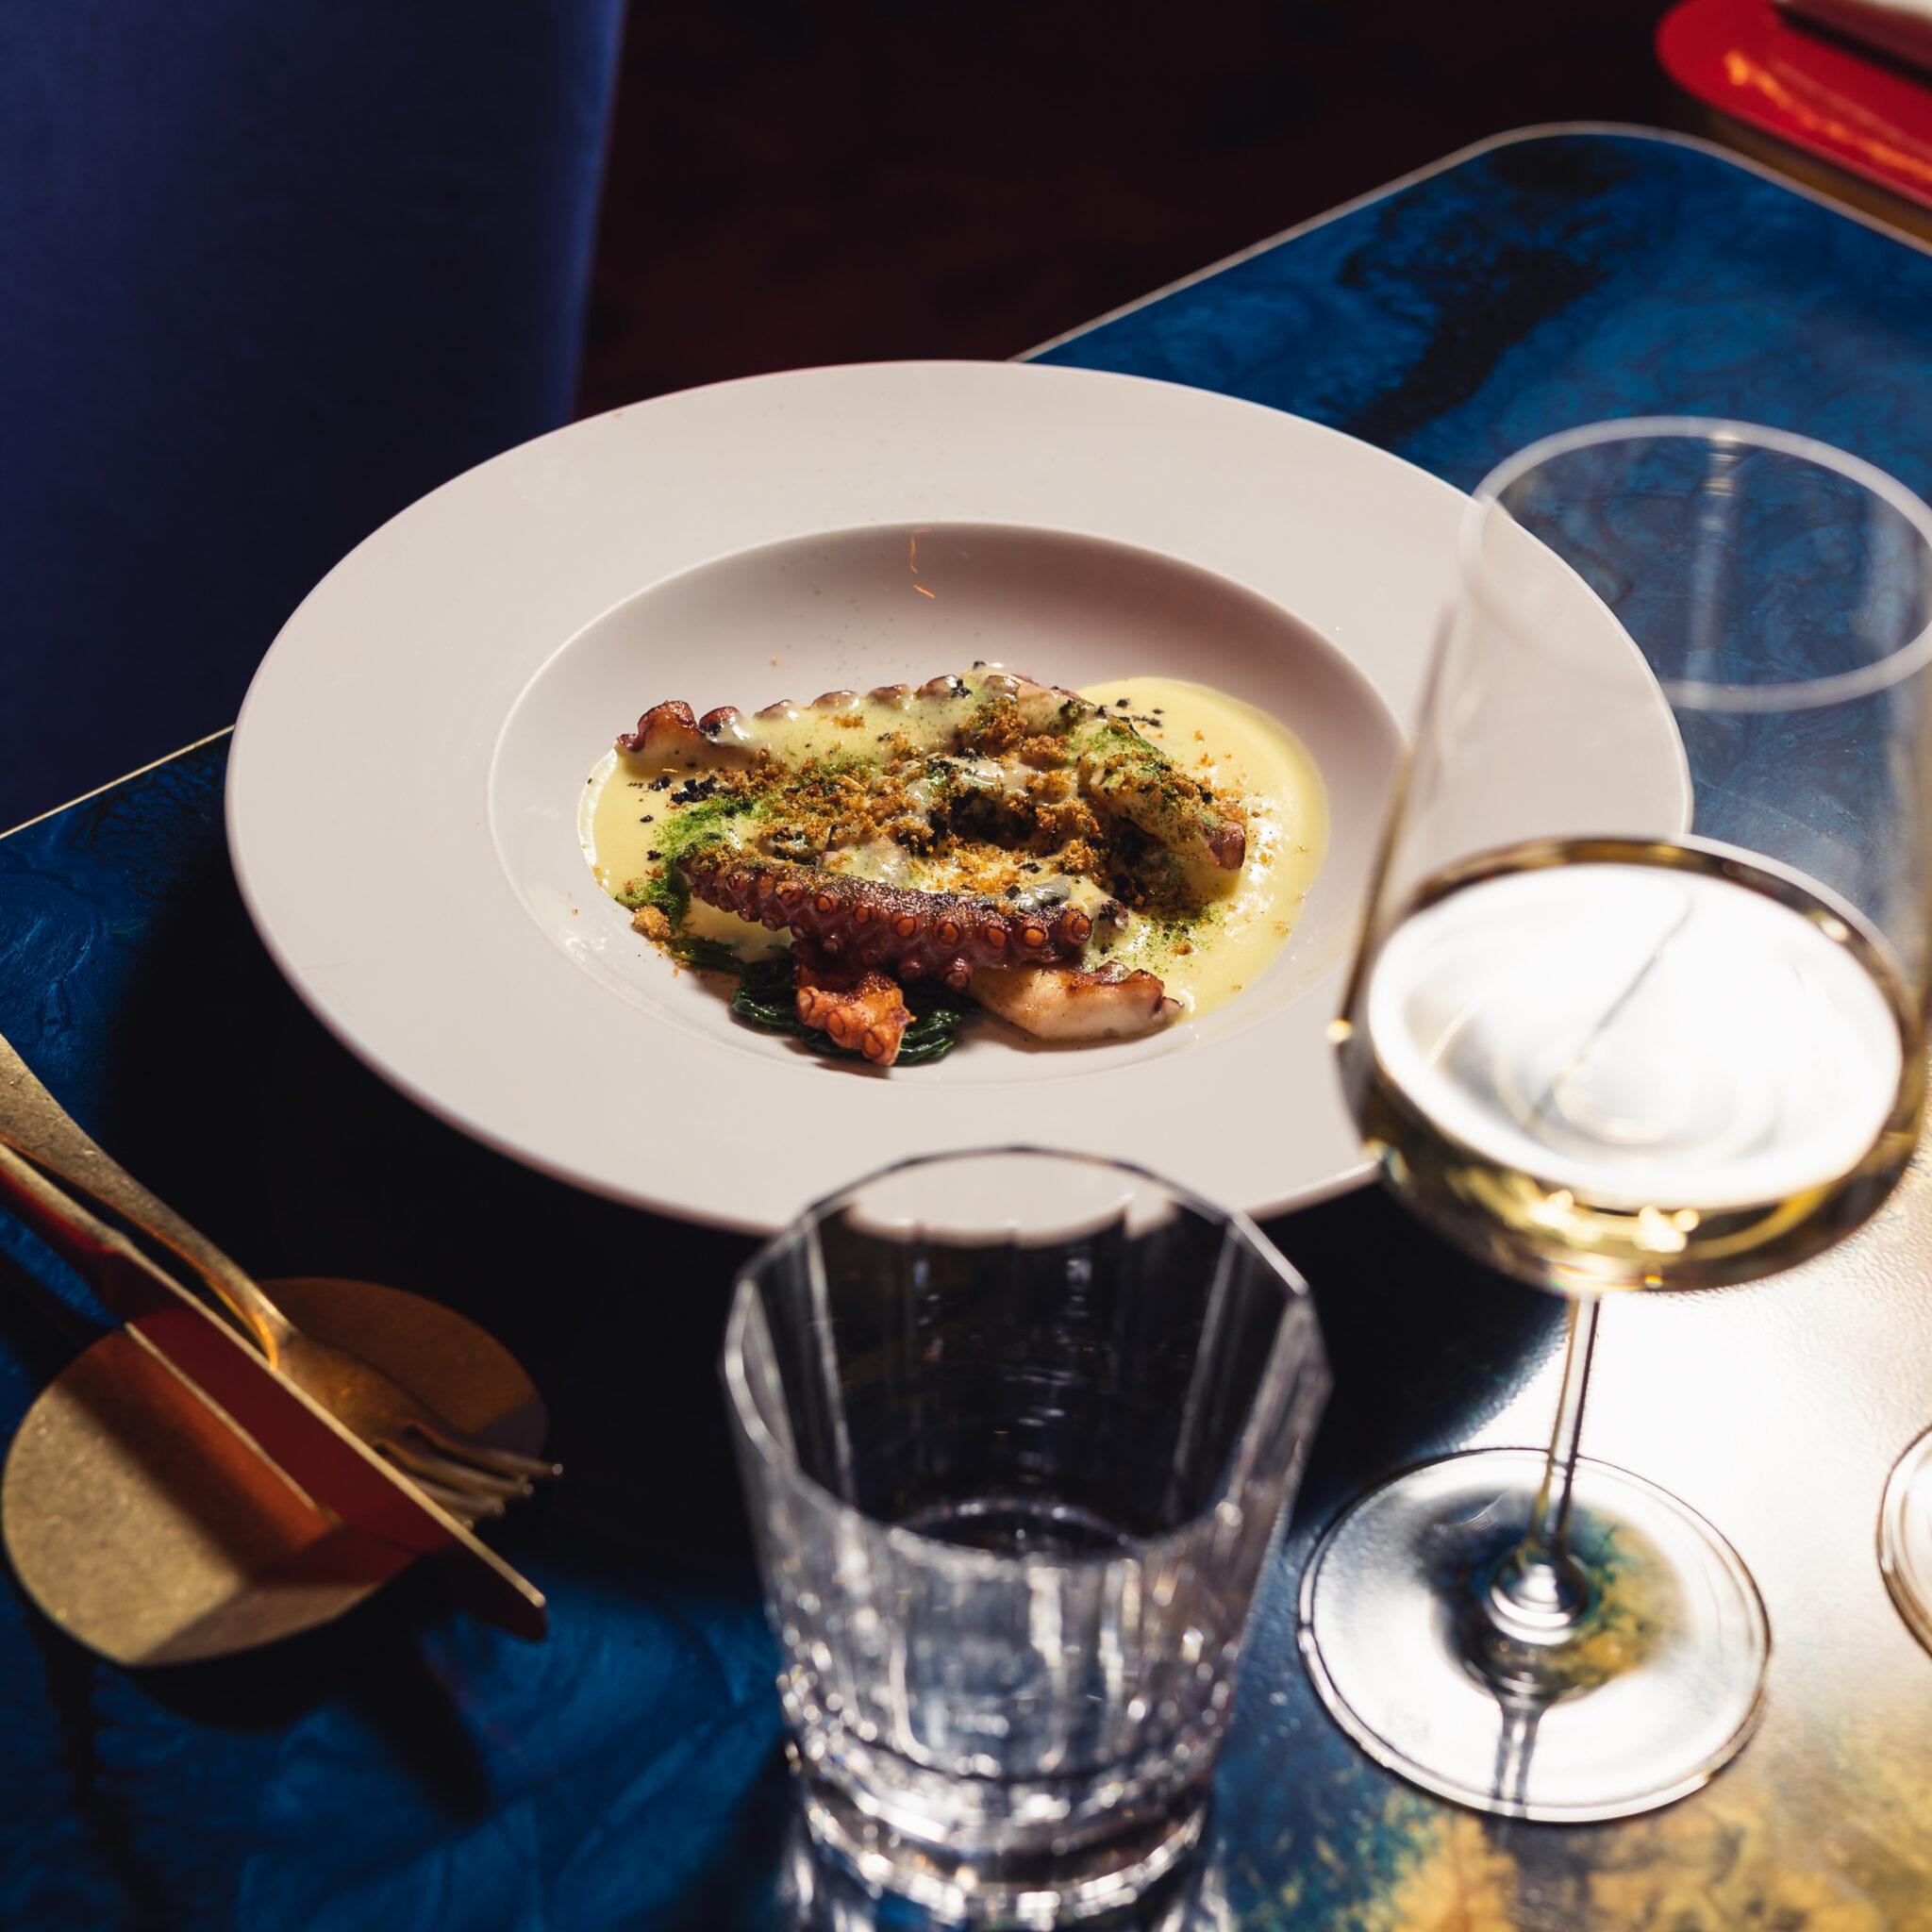 Un delizioso piatto di polpo a cena, accompagnato da un bicchiere di vino bianco e uno di acqua. Il polpo è servito con una salsa delicata e spezie.